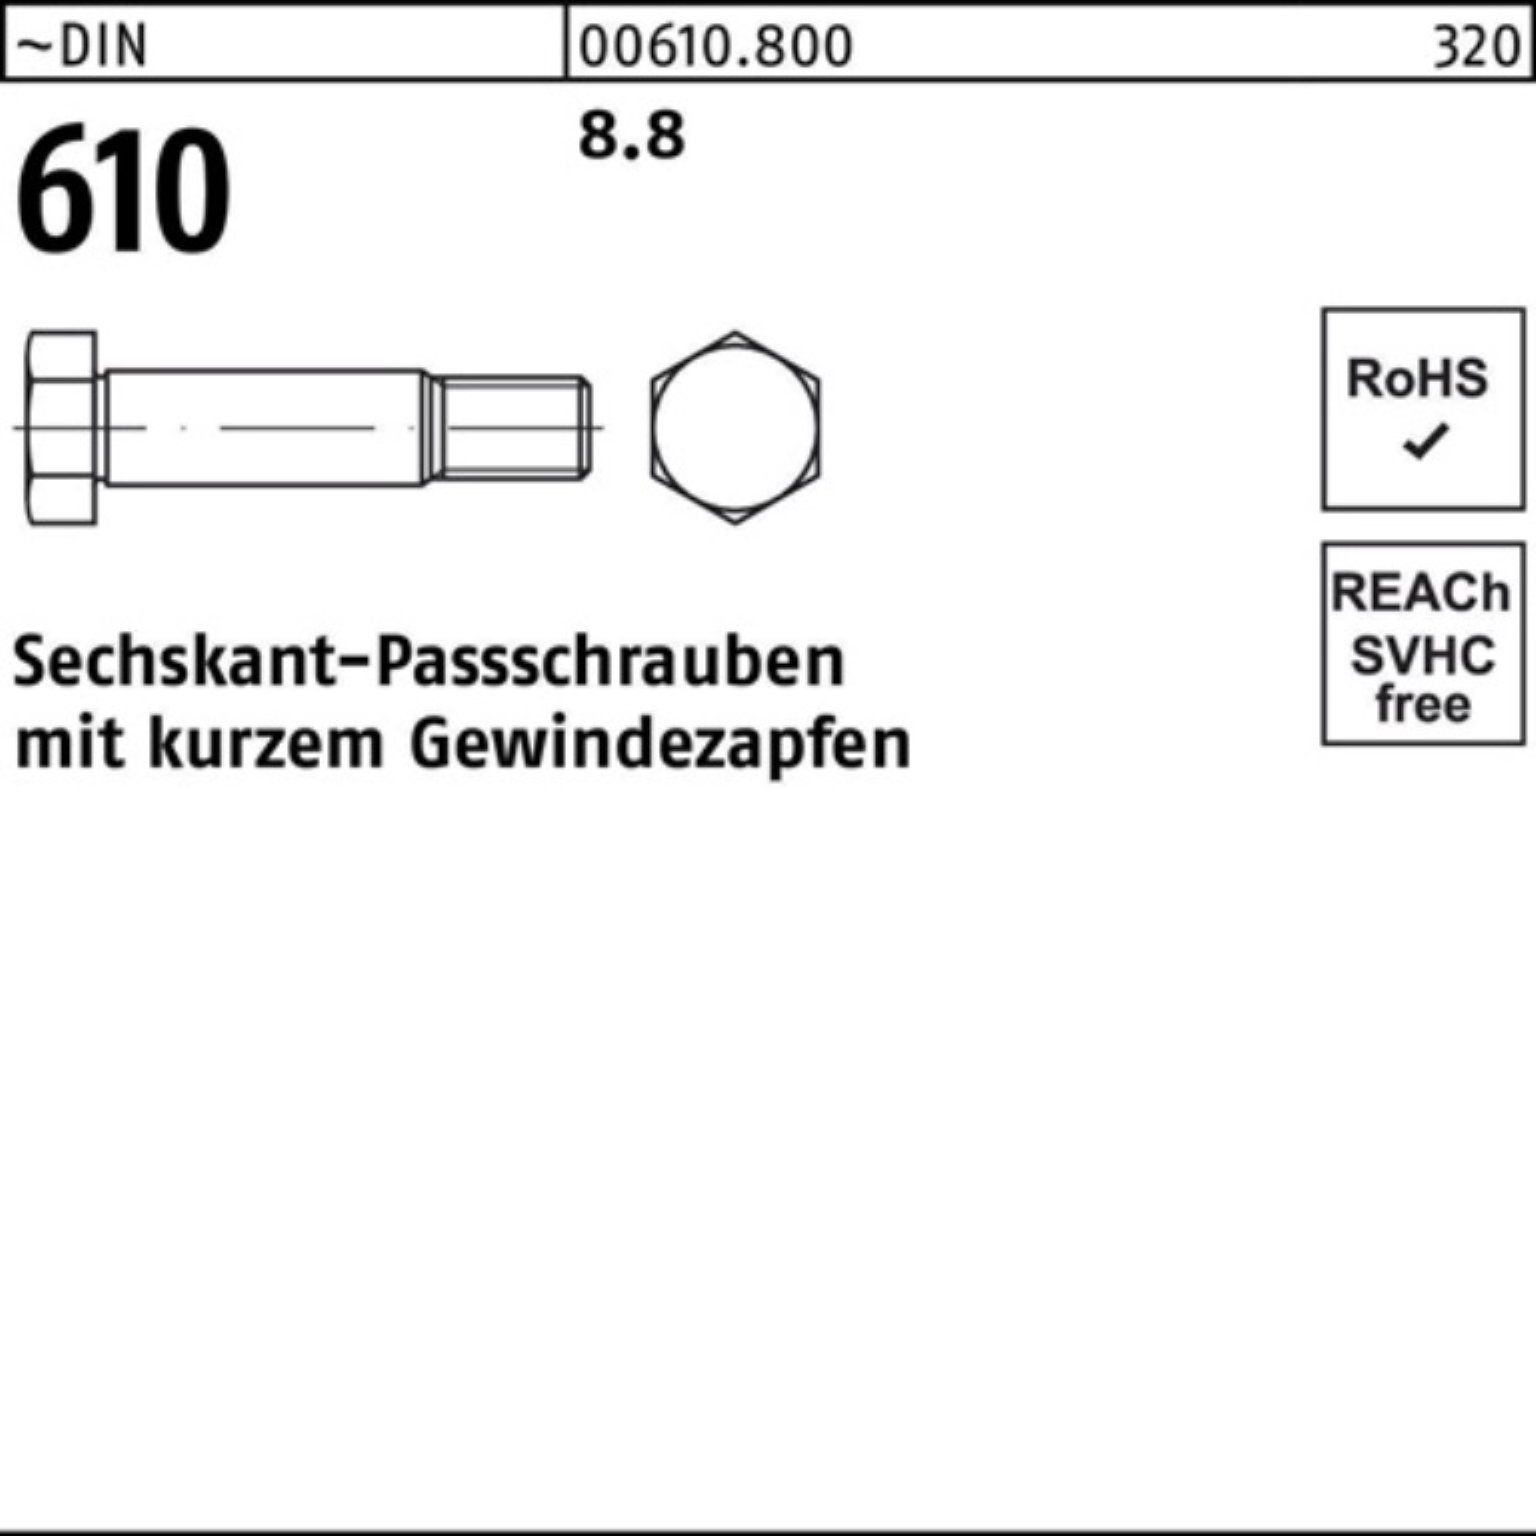 610 100er DIN Reyher Sechskantpassschraube M16x kurzem 70 Gewindezapfen Schraube Pack